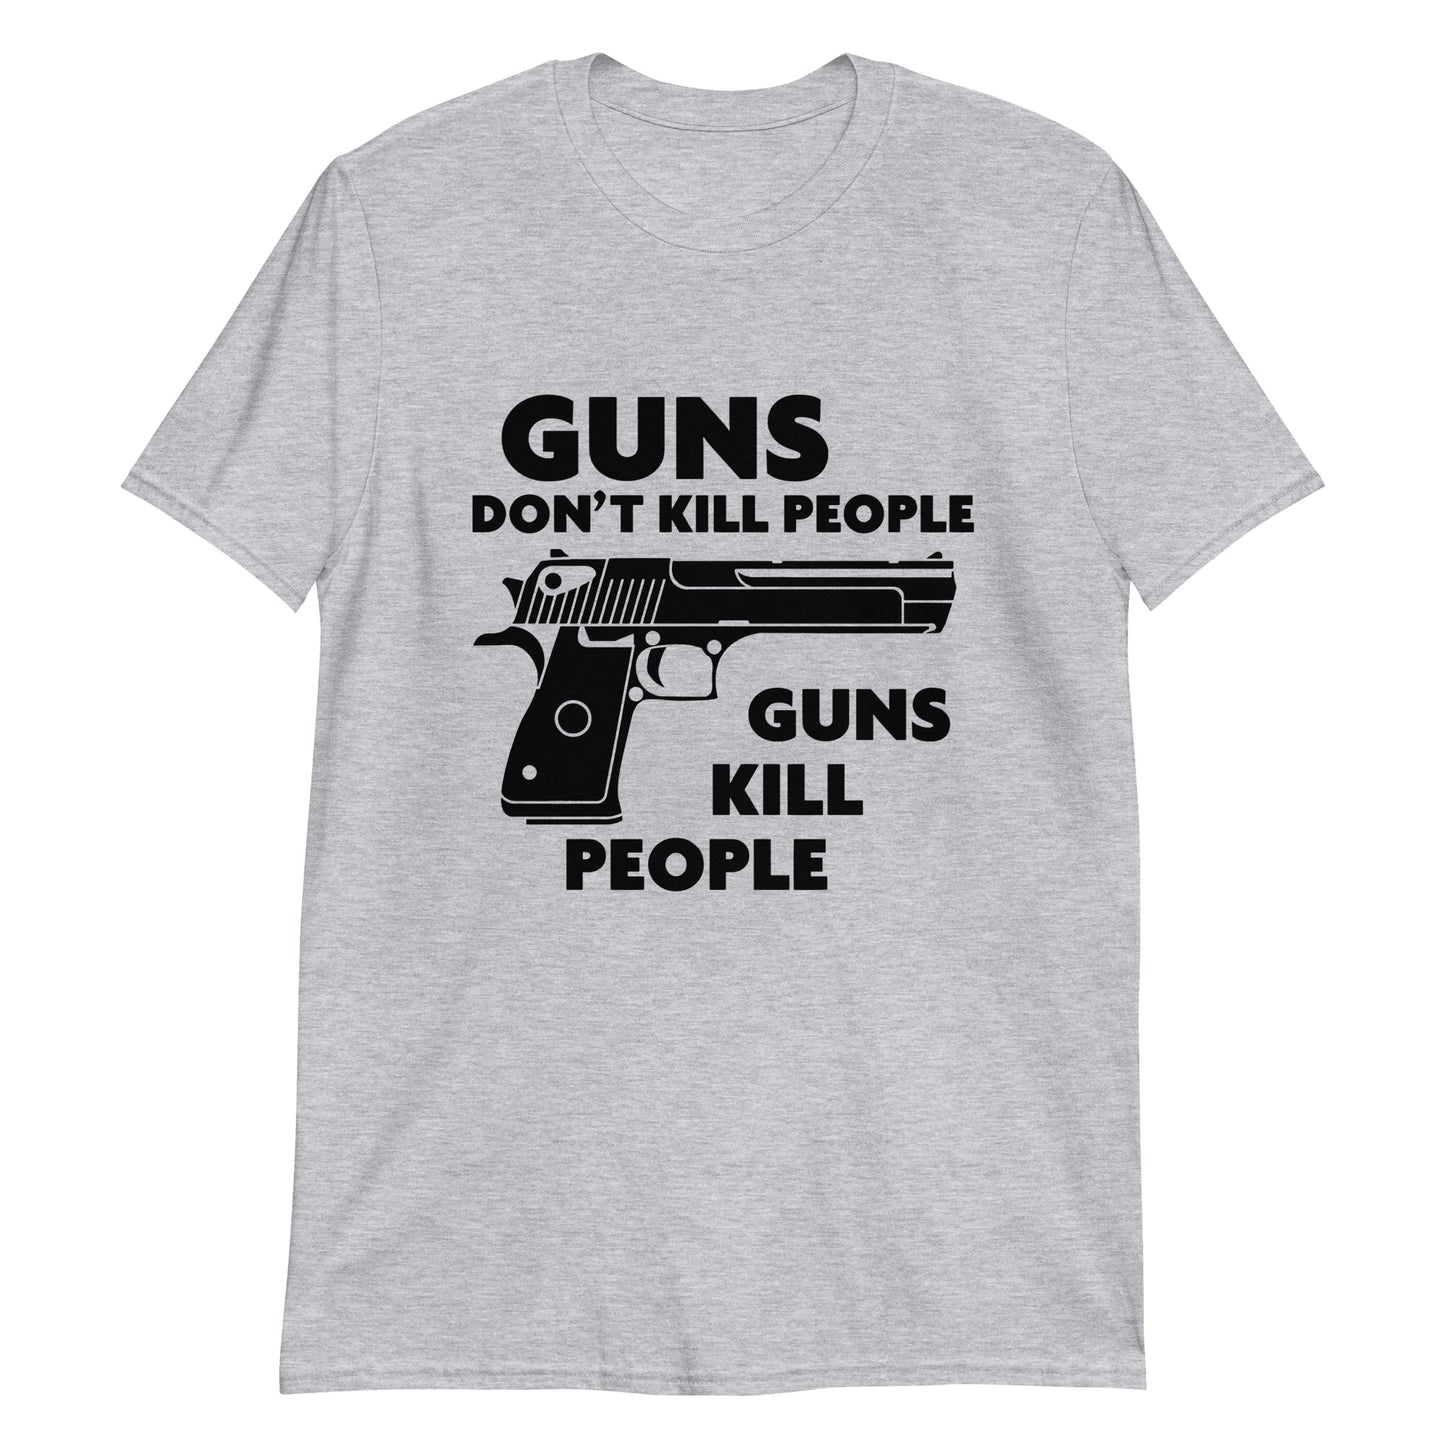 Guns don't kill people, guns kill people.